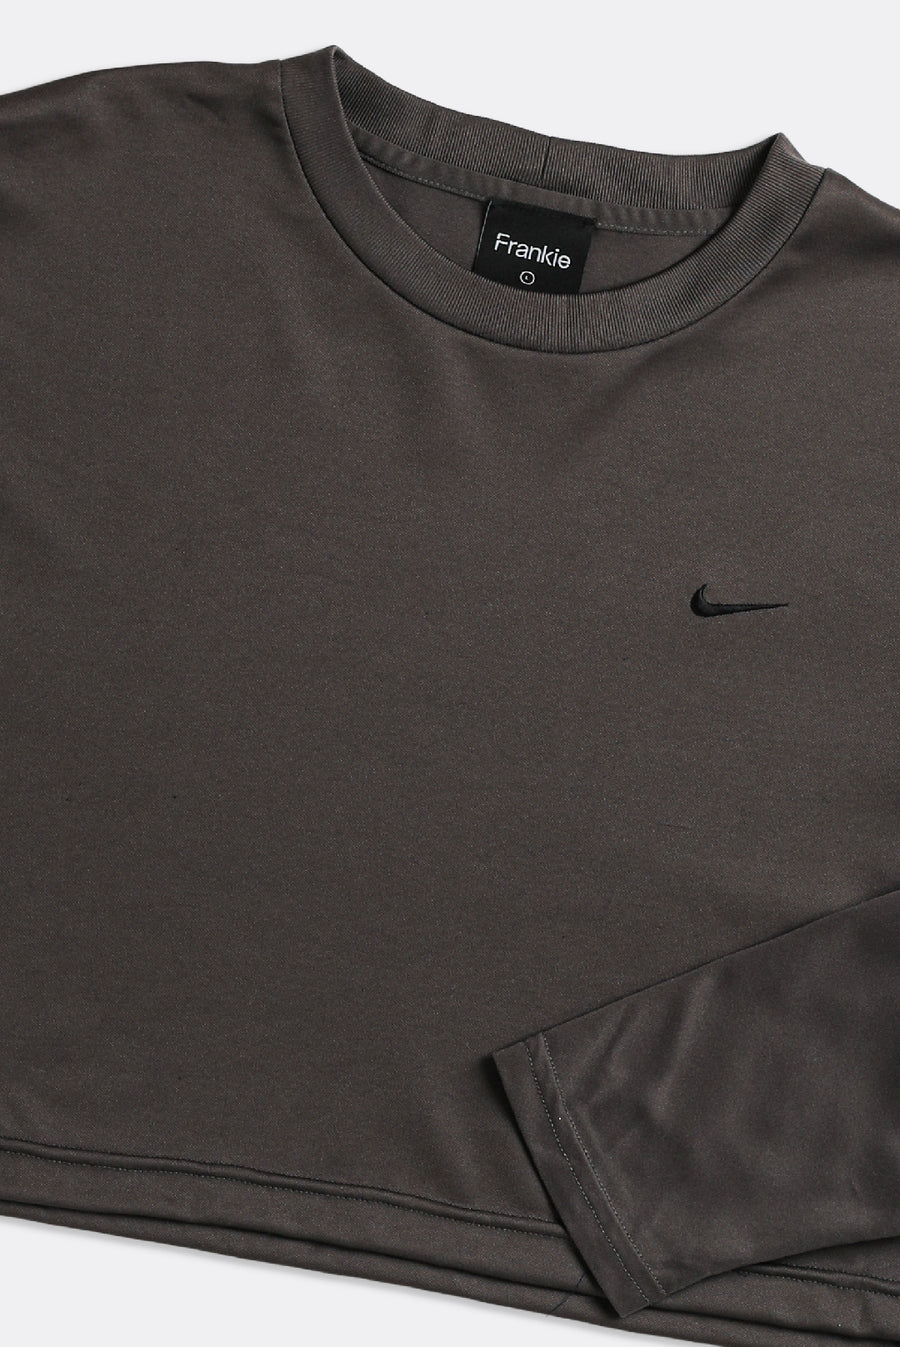 Rework Nike Crop Athletic Long Sleeve Tee - L